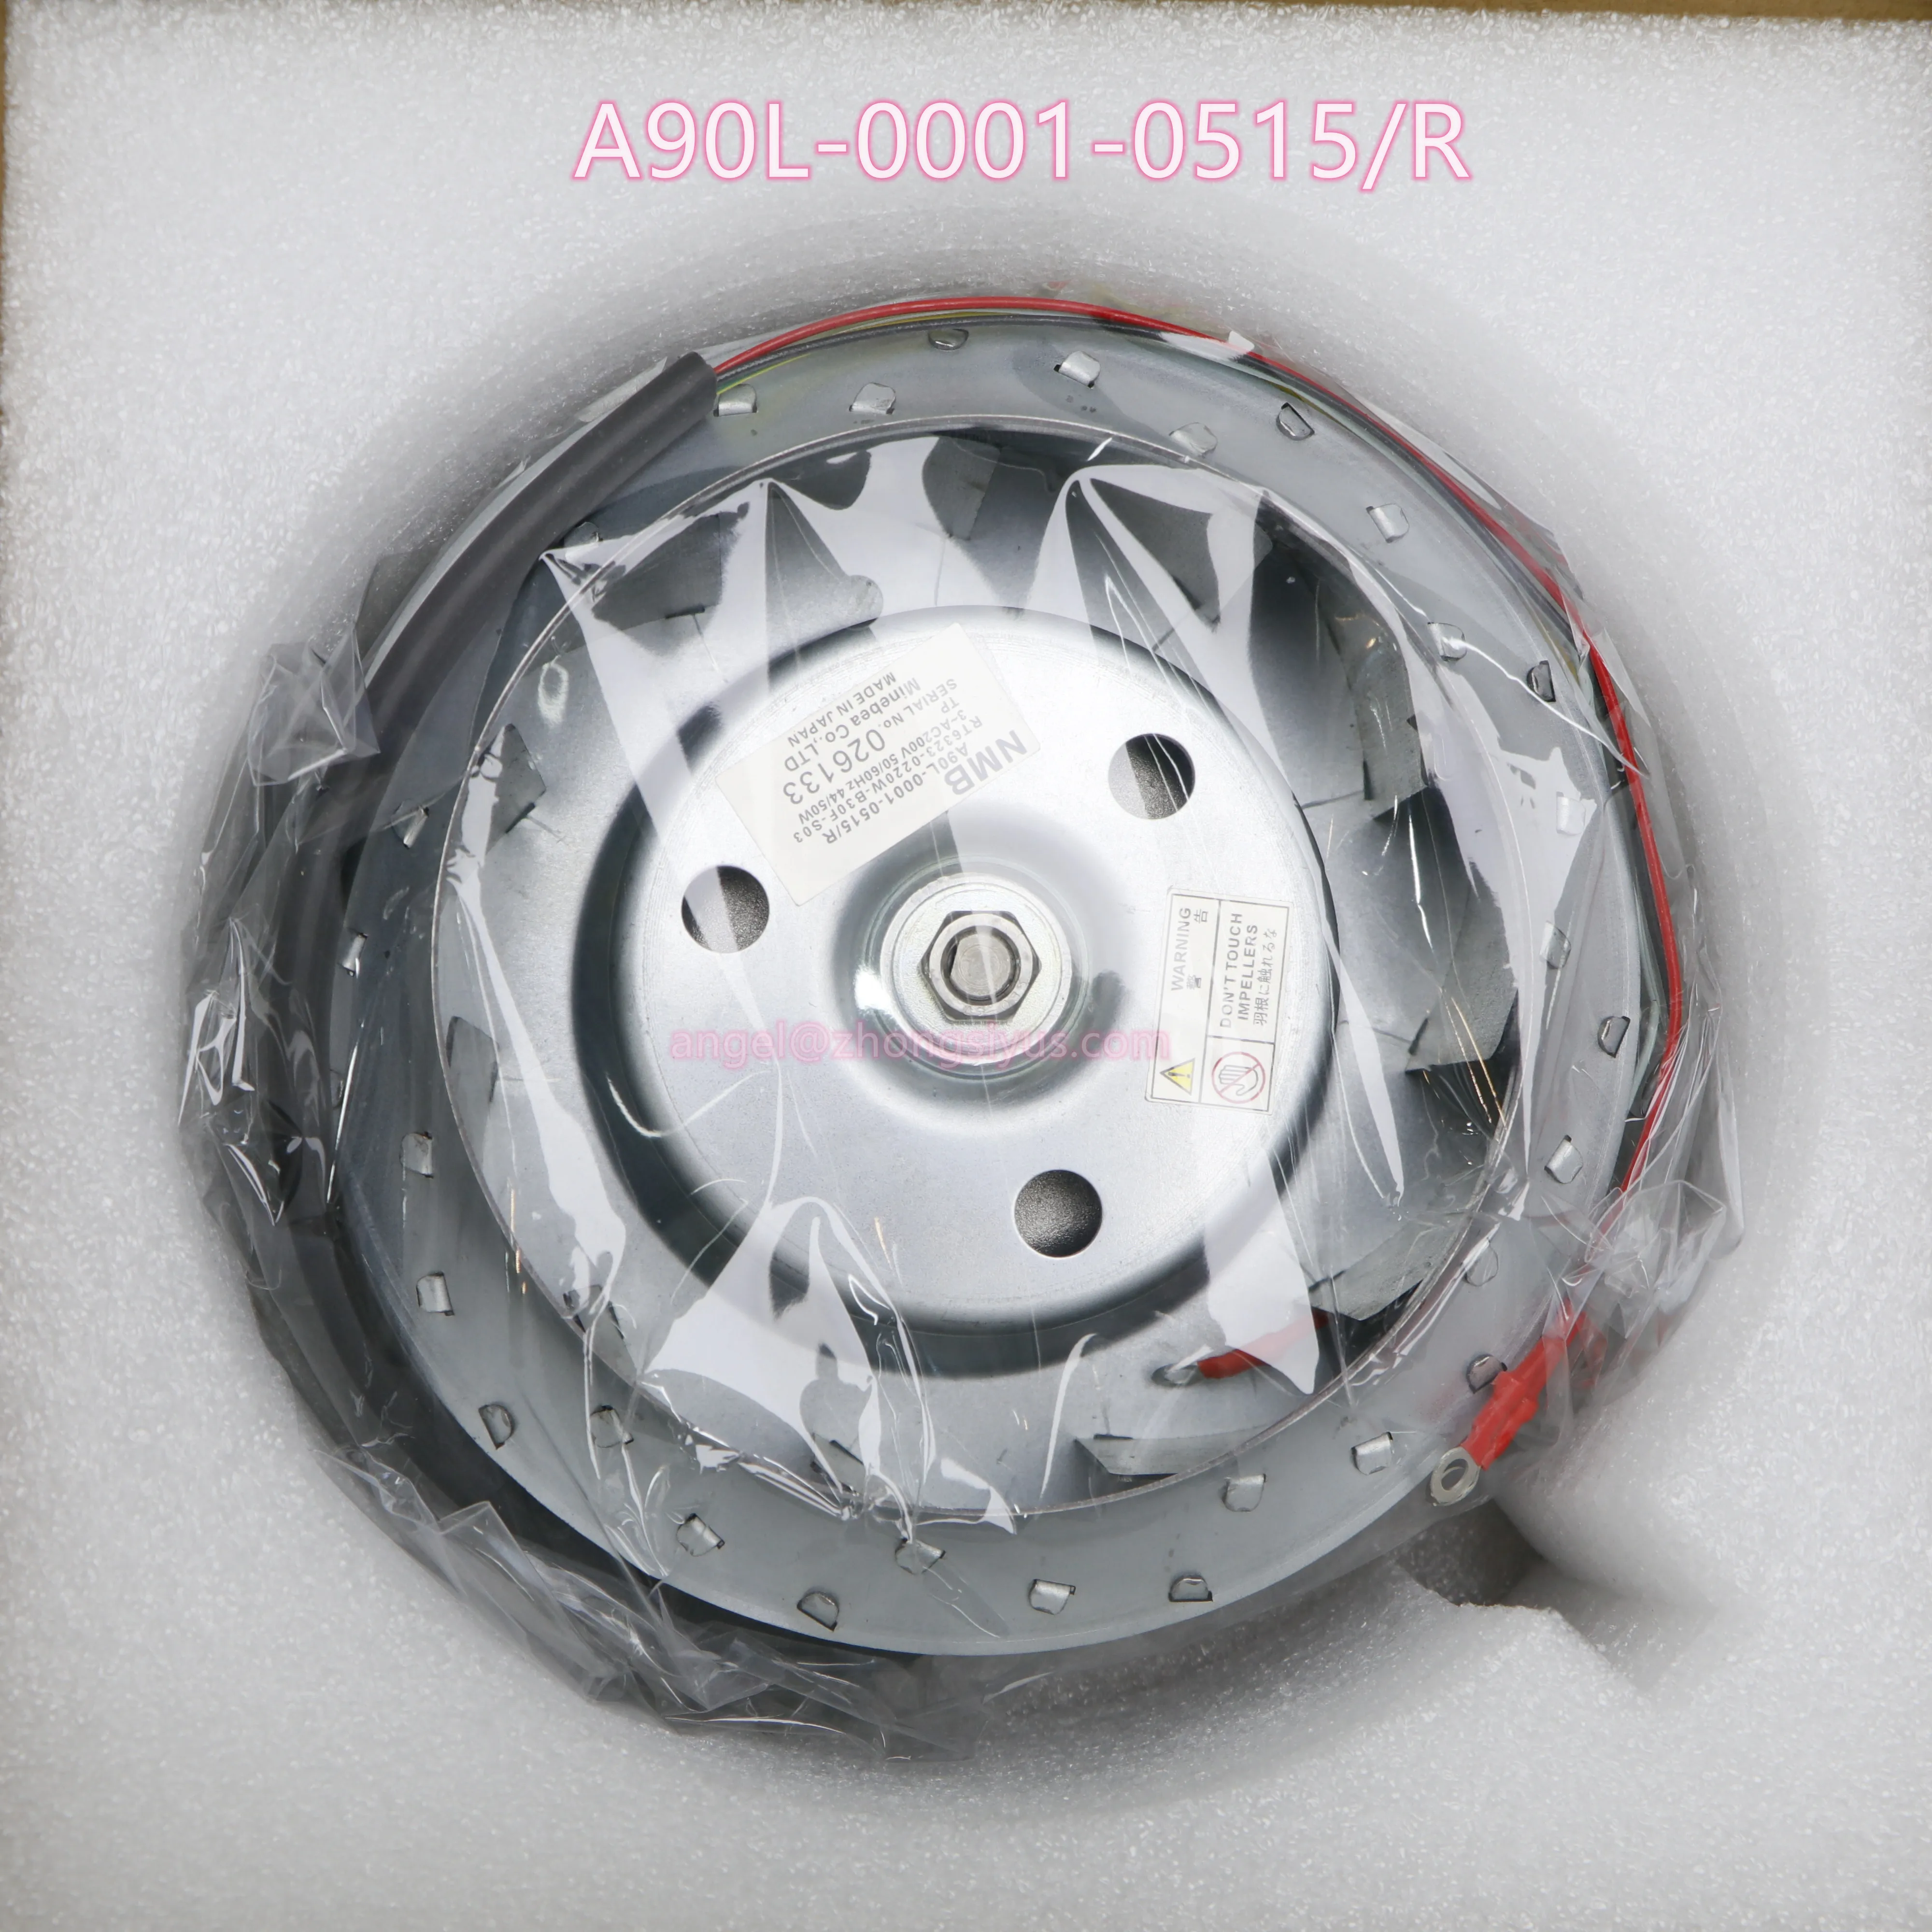 

A90L-0001-0515/R Original new Brand New Spindle Fan Spot A90L 0001 0515 R